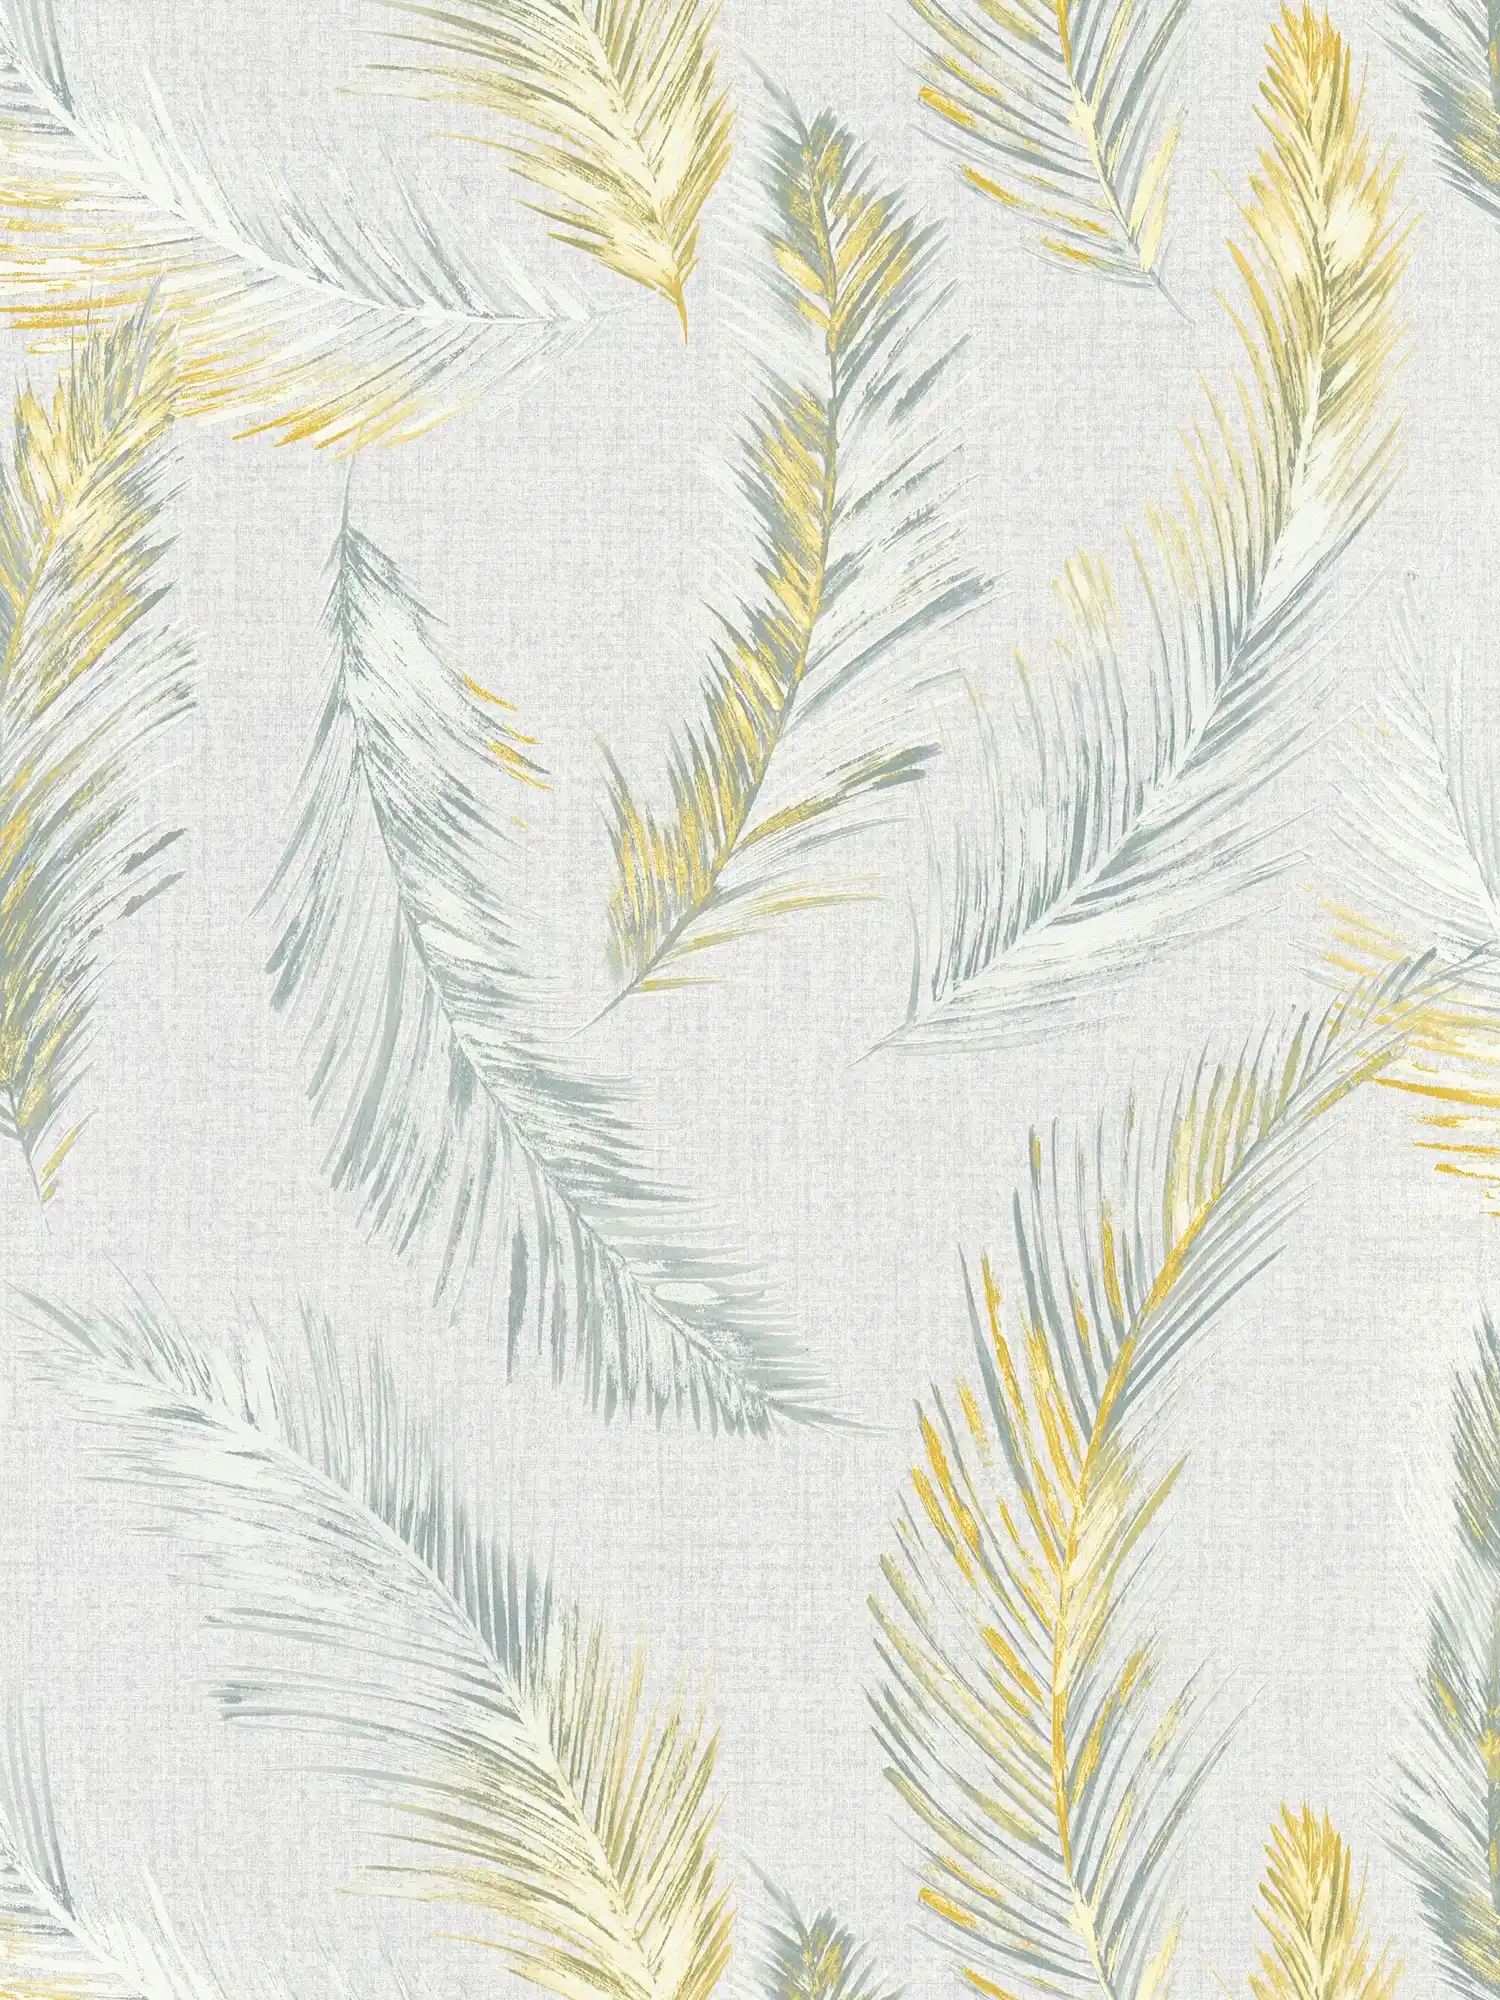 Textiloptik Tapete mit Feder Motiv im Landhausstil – Grau
